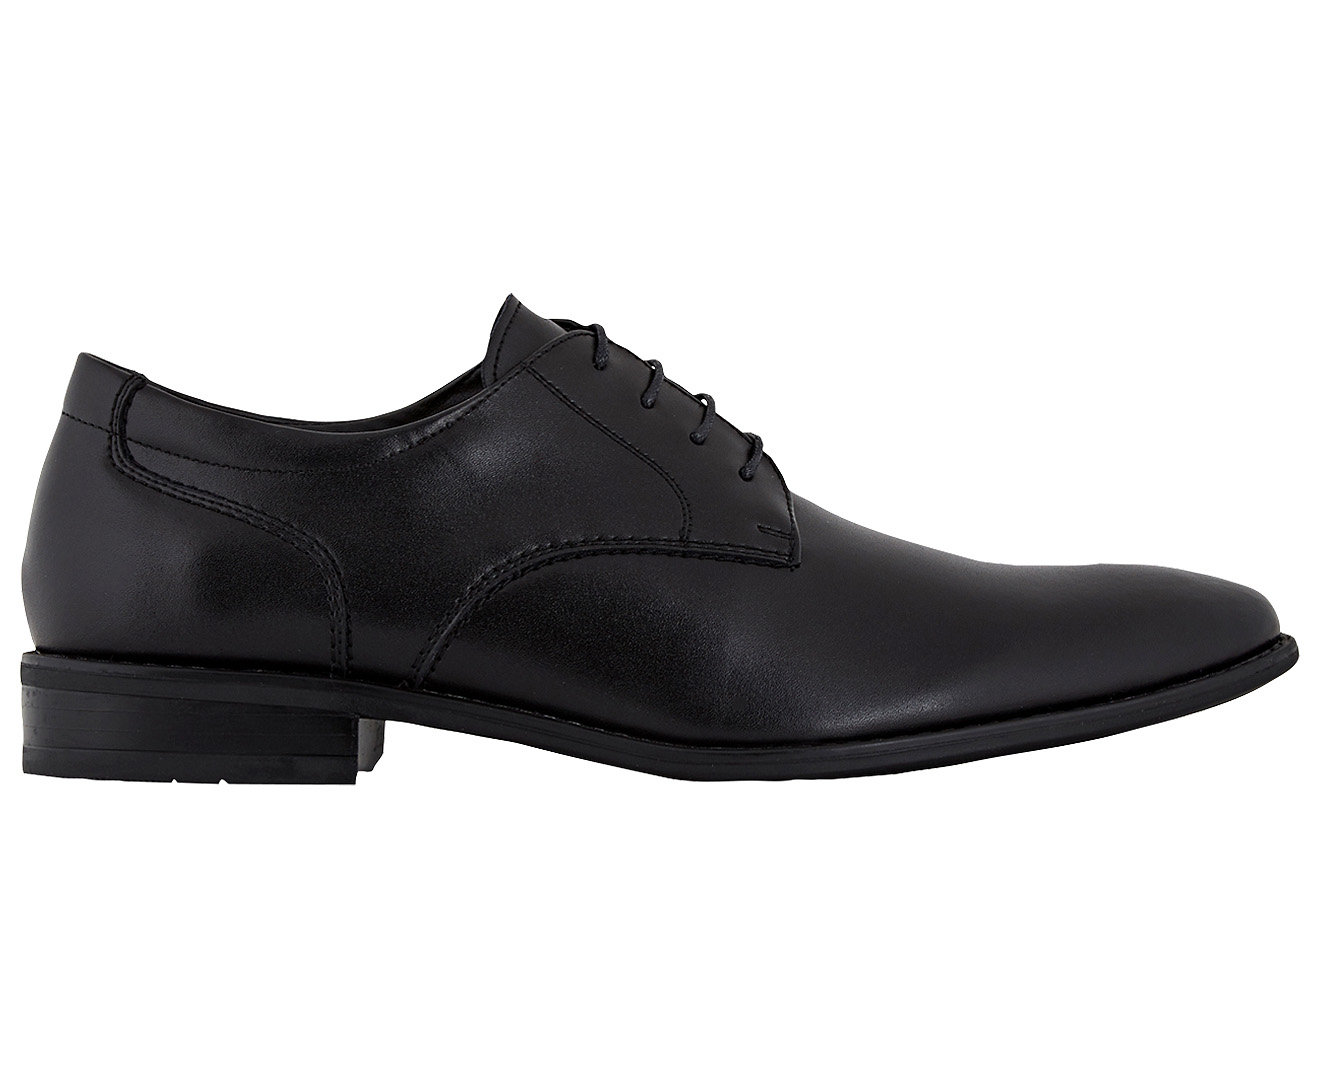 Julius Marlow Men's Leather Swift Shoe - Black | Www.catch.co.nz, www ...